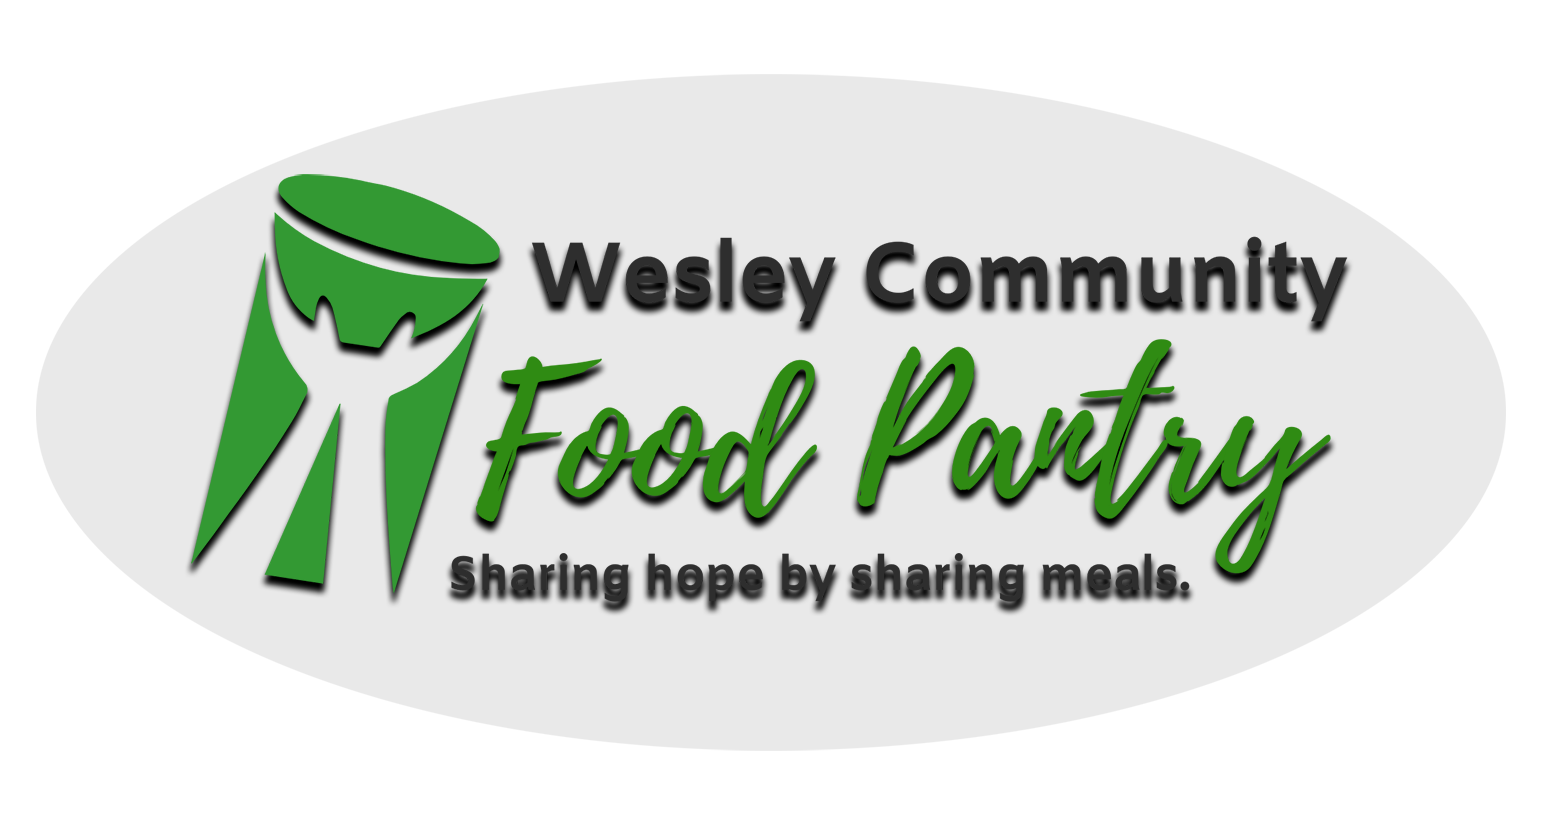 Wesley Community Food Pantry